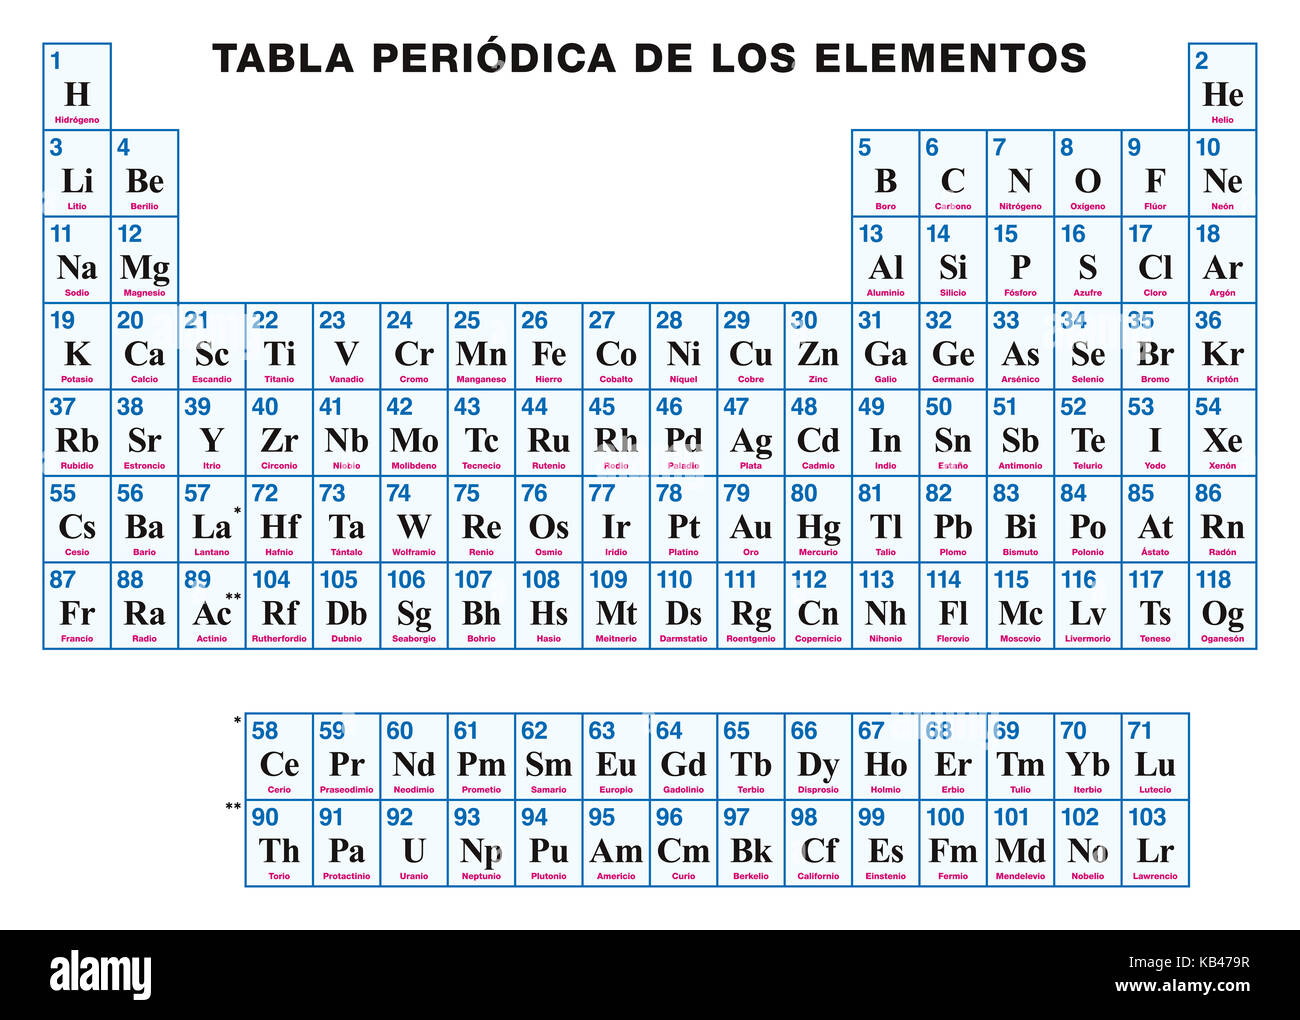 Tabla periódica de los elementos. español. disposición tabular de los  elementos químicos con sus números atómicos, símbolos y nombres. 118  elementos confirmados Fotografía de stock - Alamy